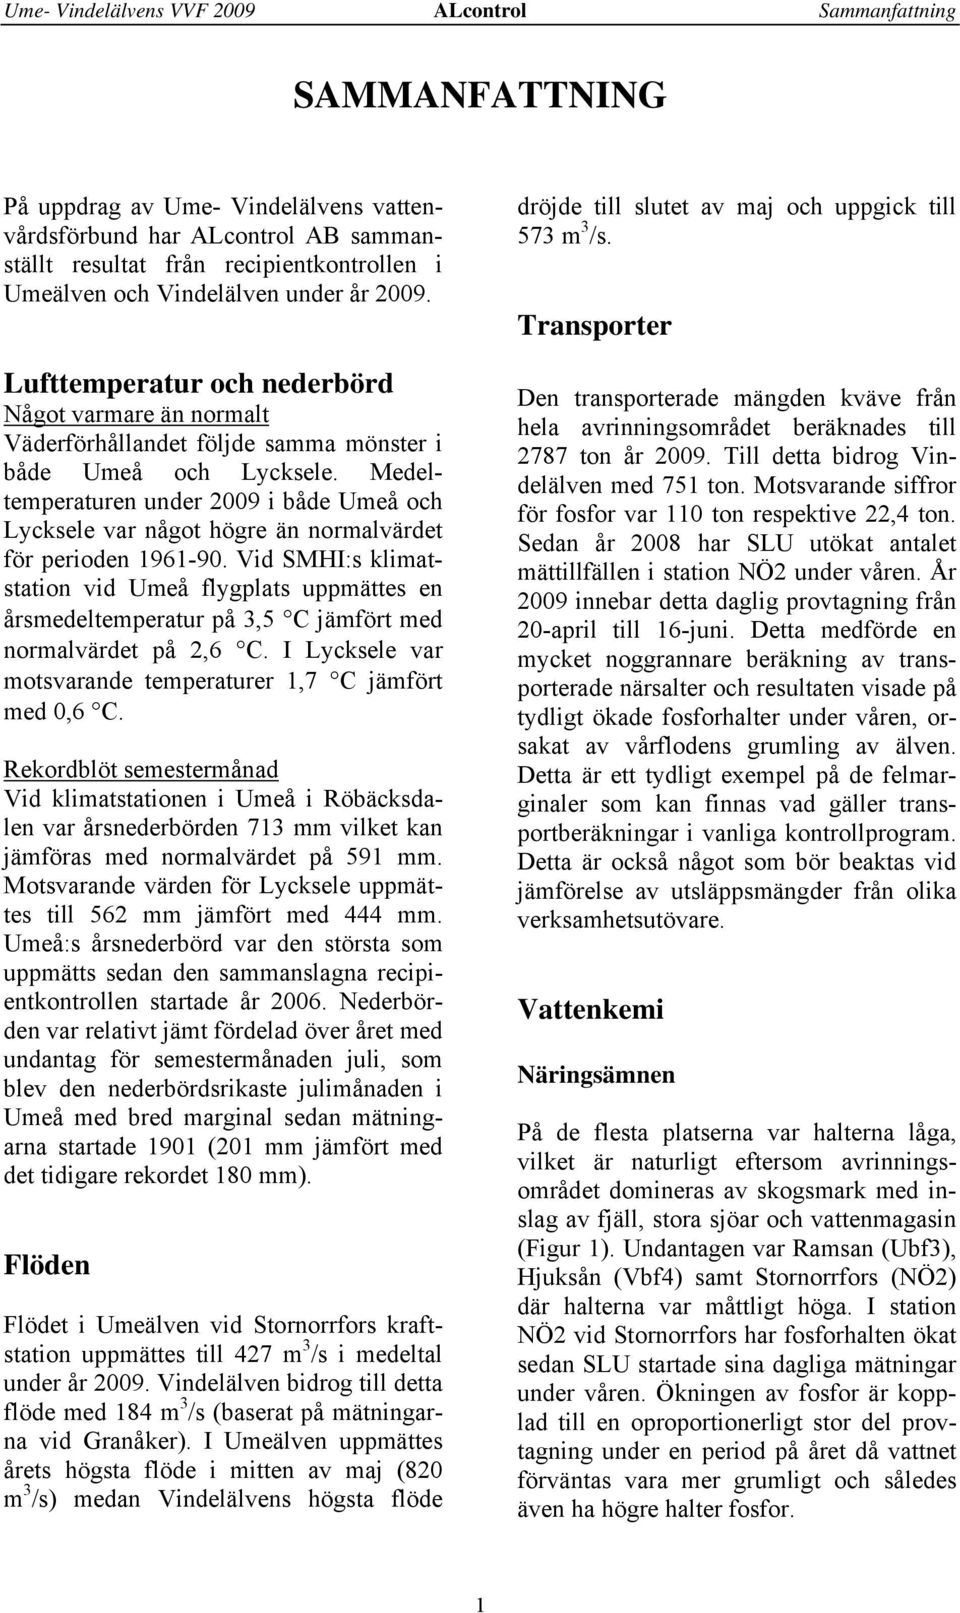 Medeltemperaturen under 29 i både Umeå och Lycksele var något högre än normalvärdet för perioden 1961-9.